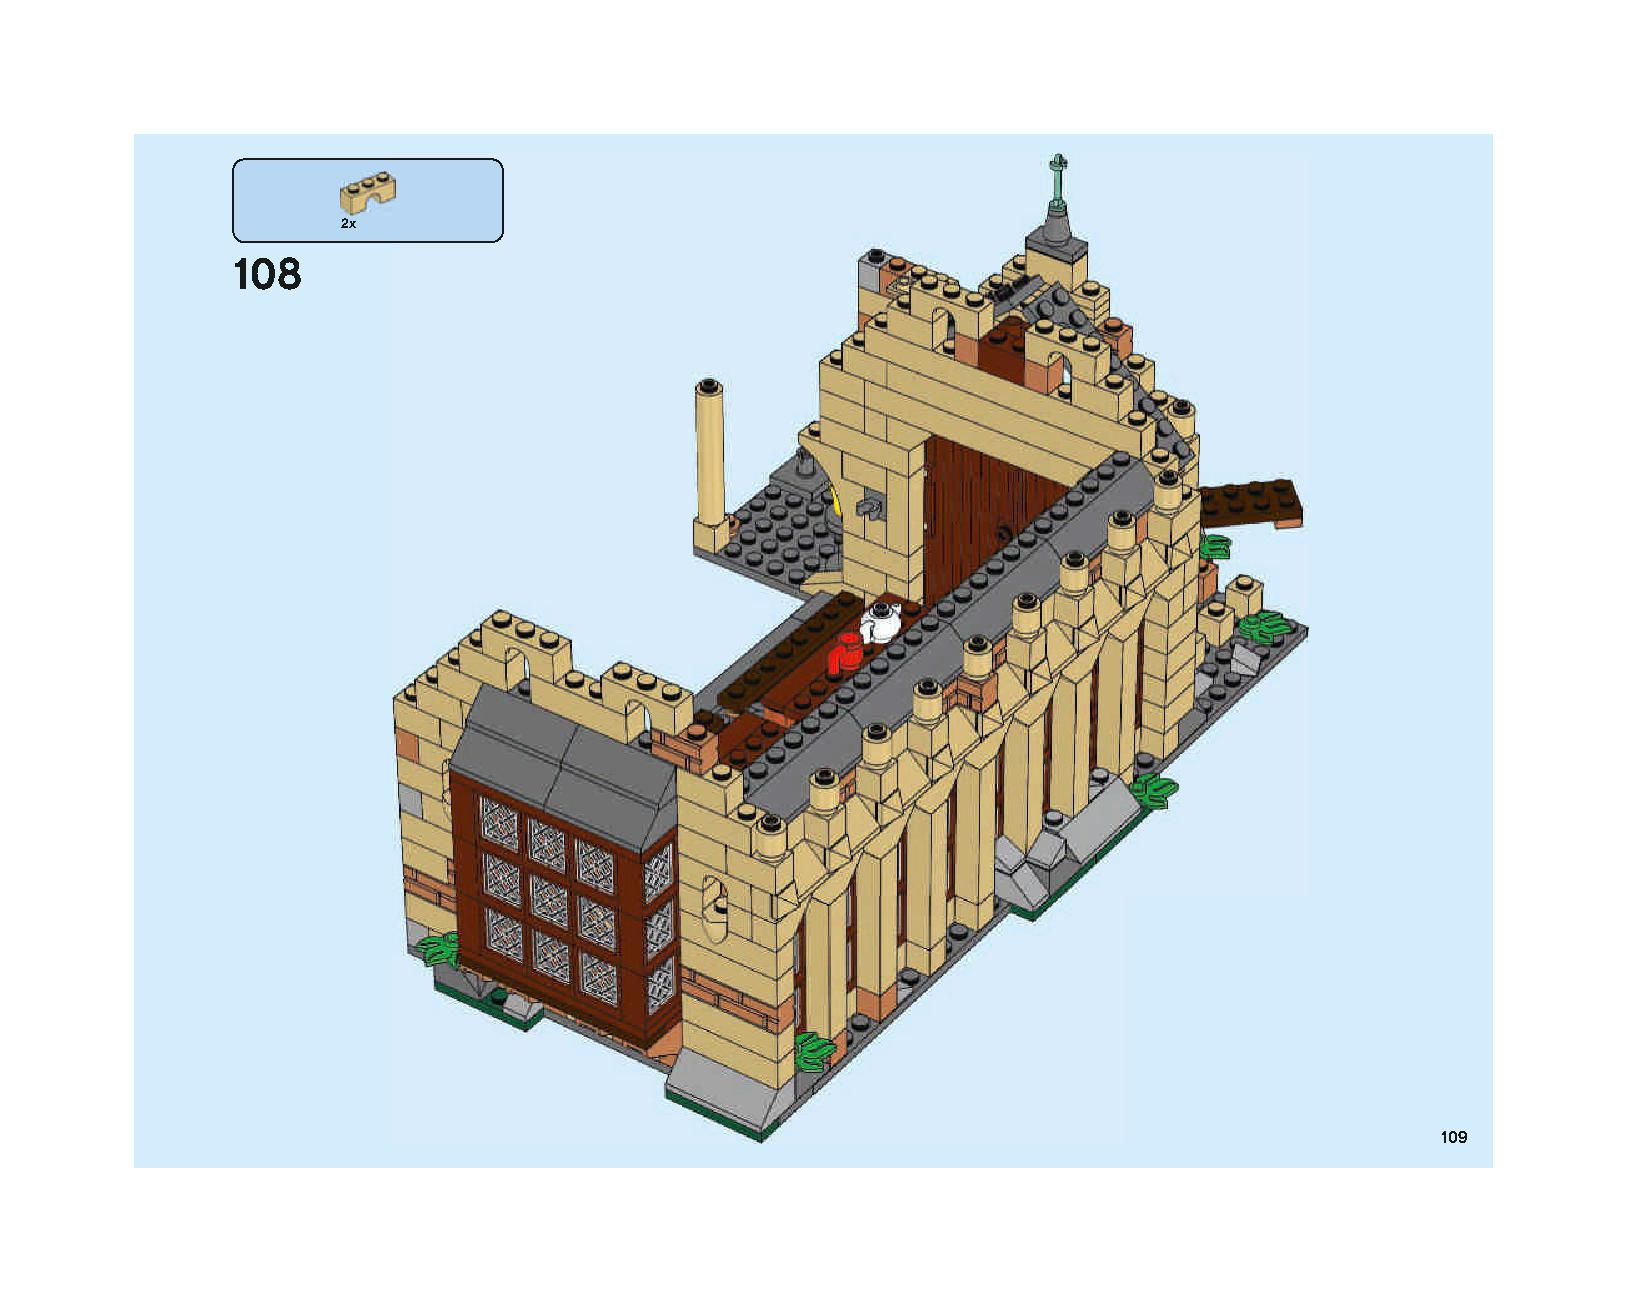 ホグワーツの大広間 75954 レゴの商品情報 レゴの説明書・組立方法 109 page